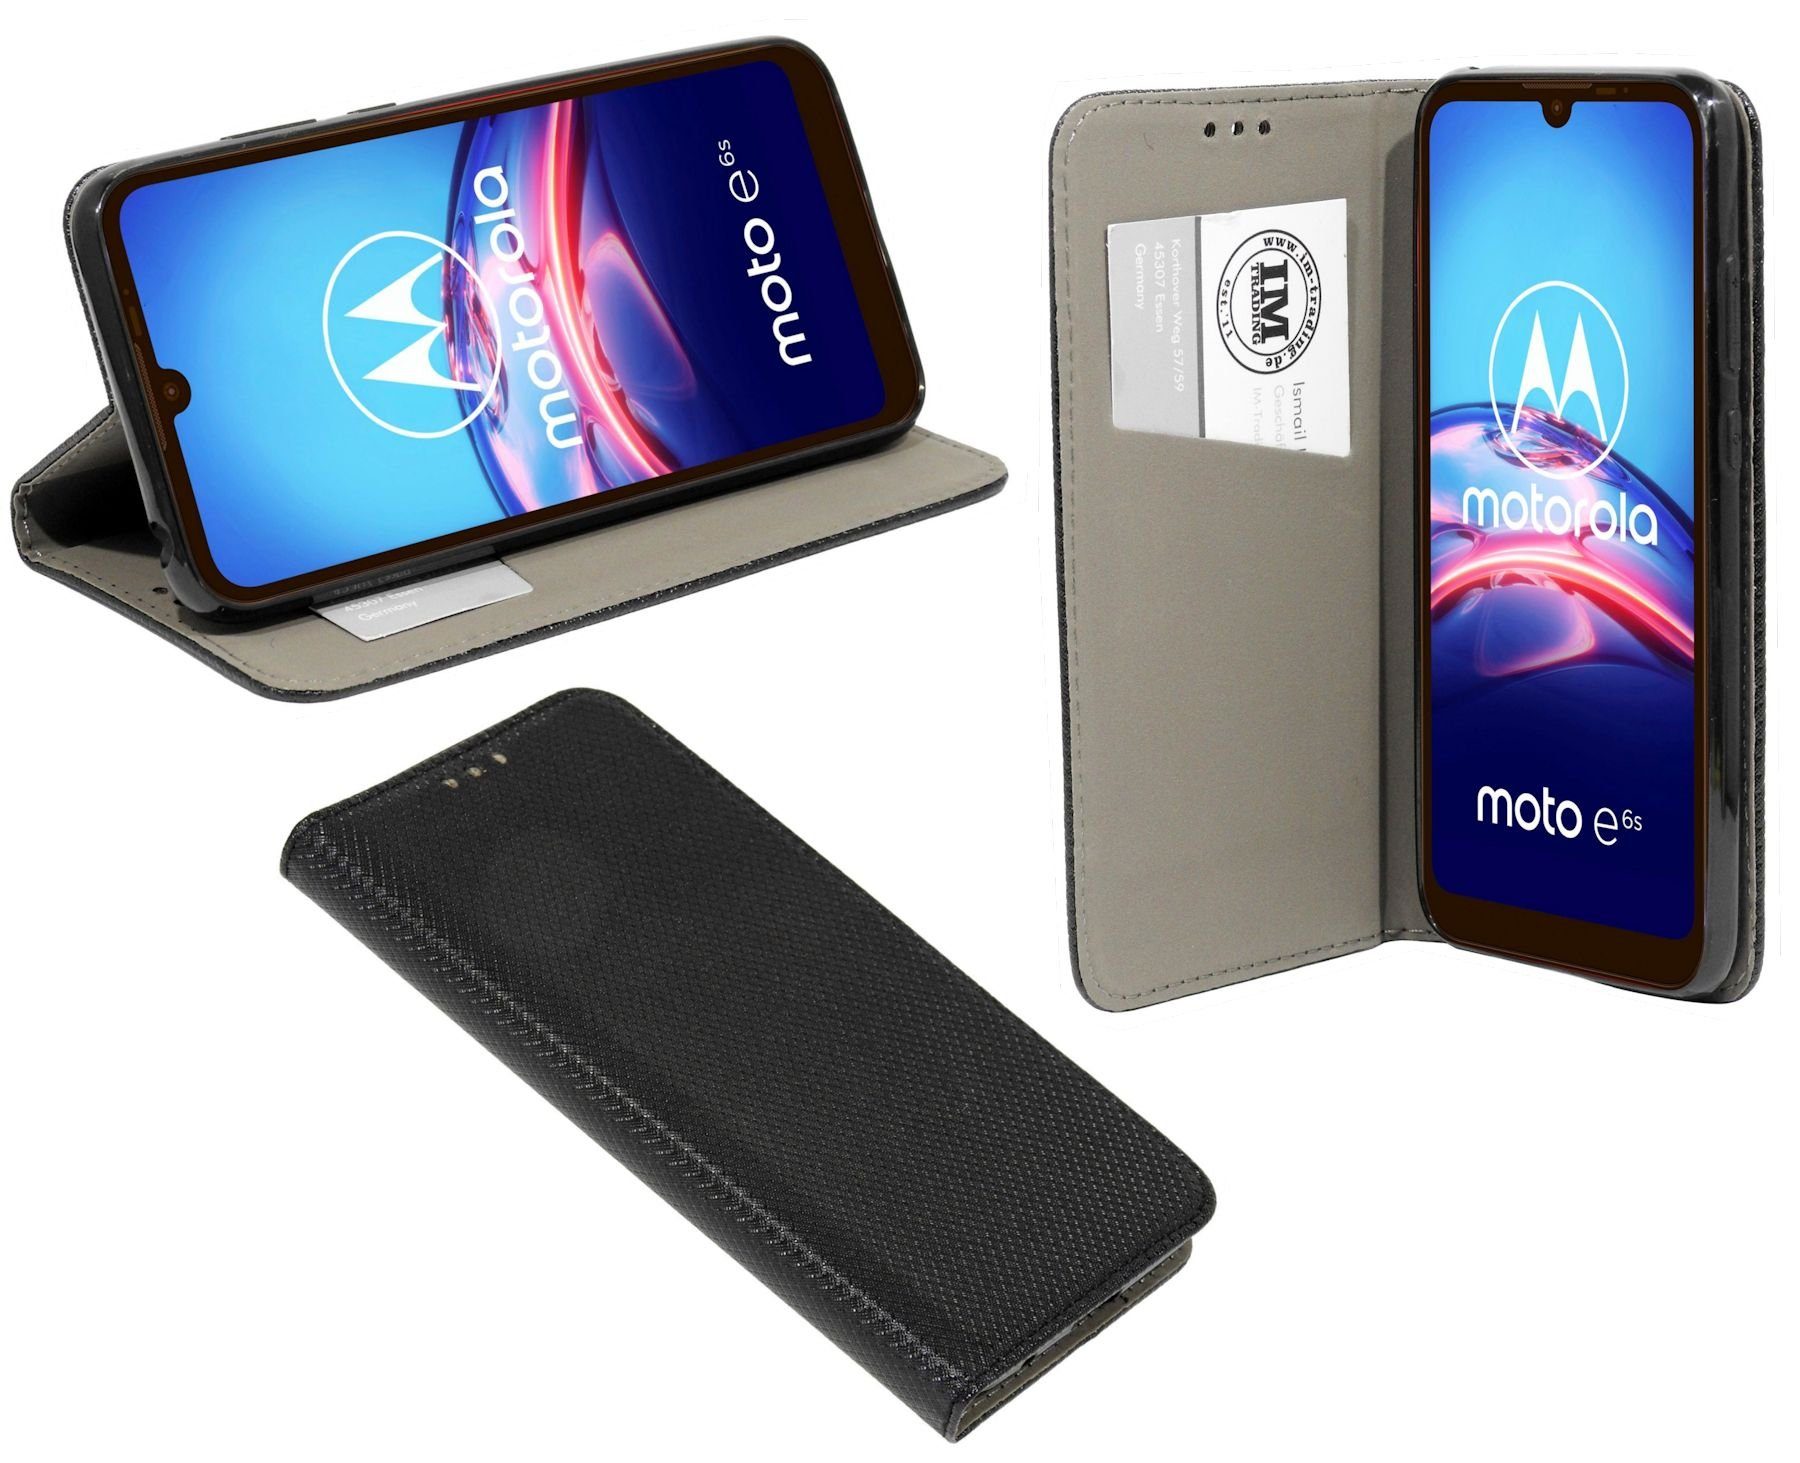 cofi1453 Handyhülle Hülle Tasche für Motorola Moto E6s, Kunstleder  Schutzhülle Handy Wallet Case Cover mit Kartenfächern, Standfunktion Schwarz